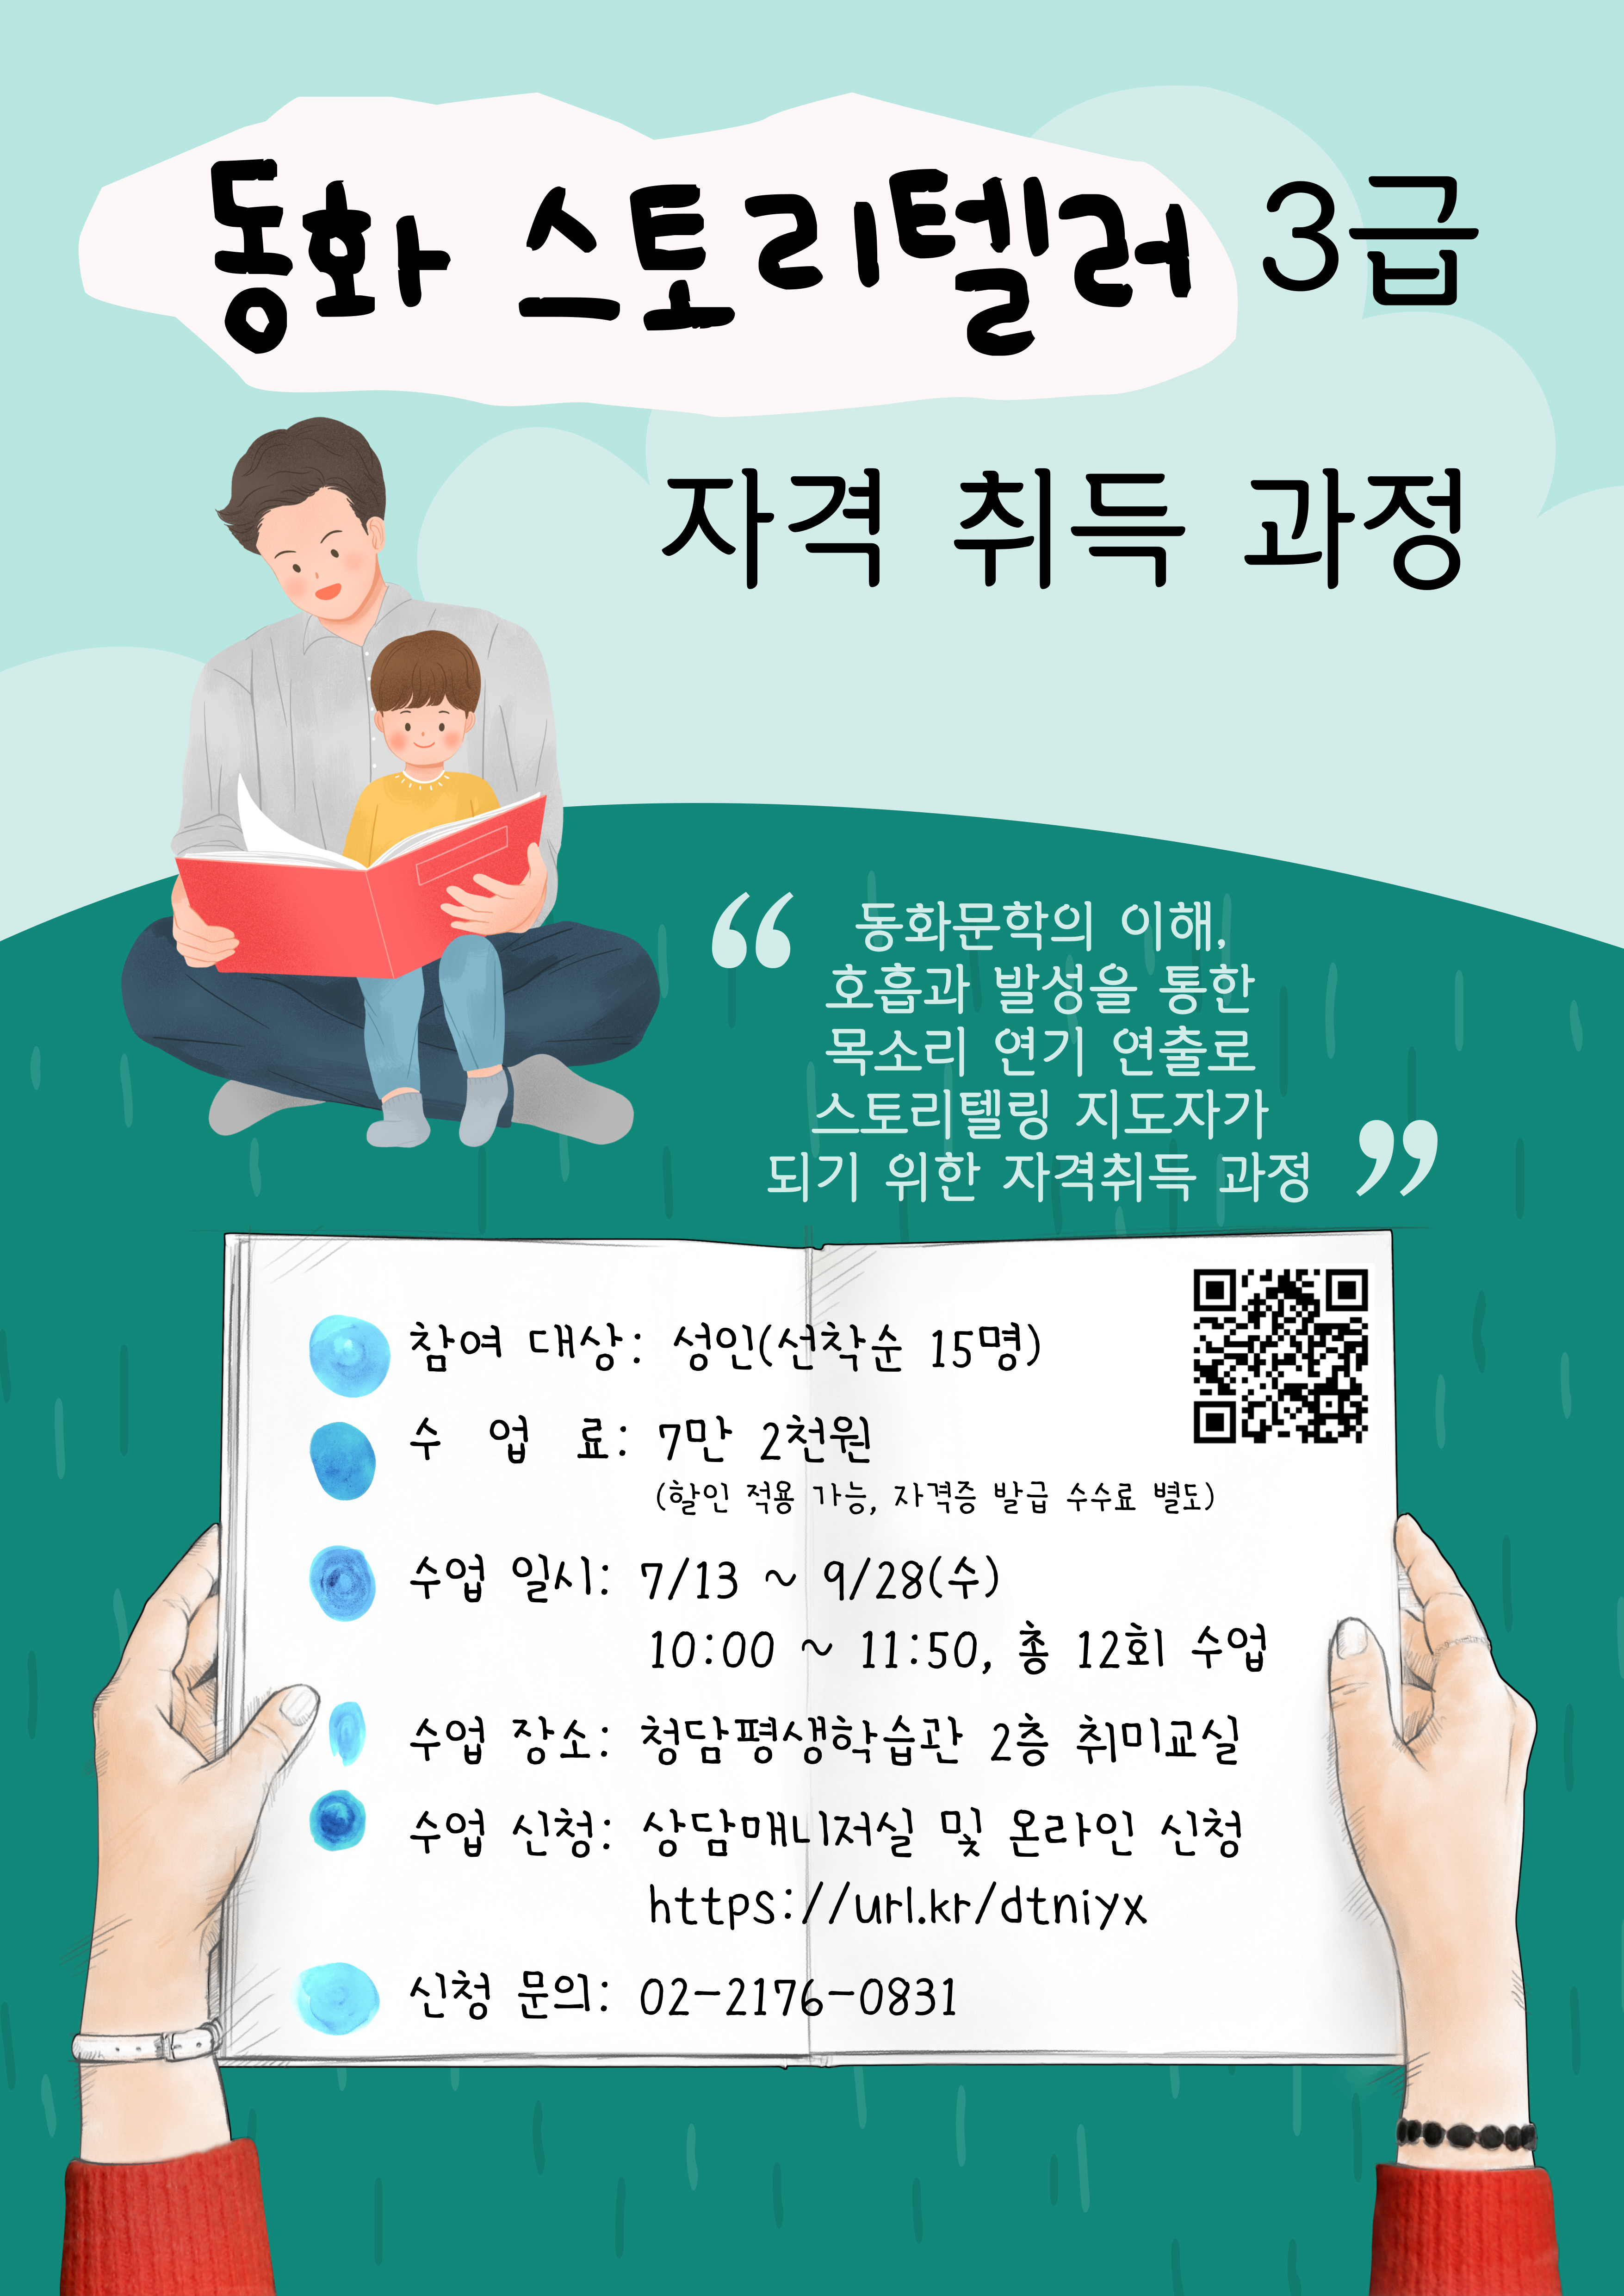 [청담평생학습관] 동화스토리텔러 3급 자격취득과정